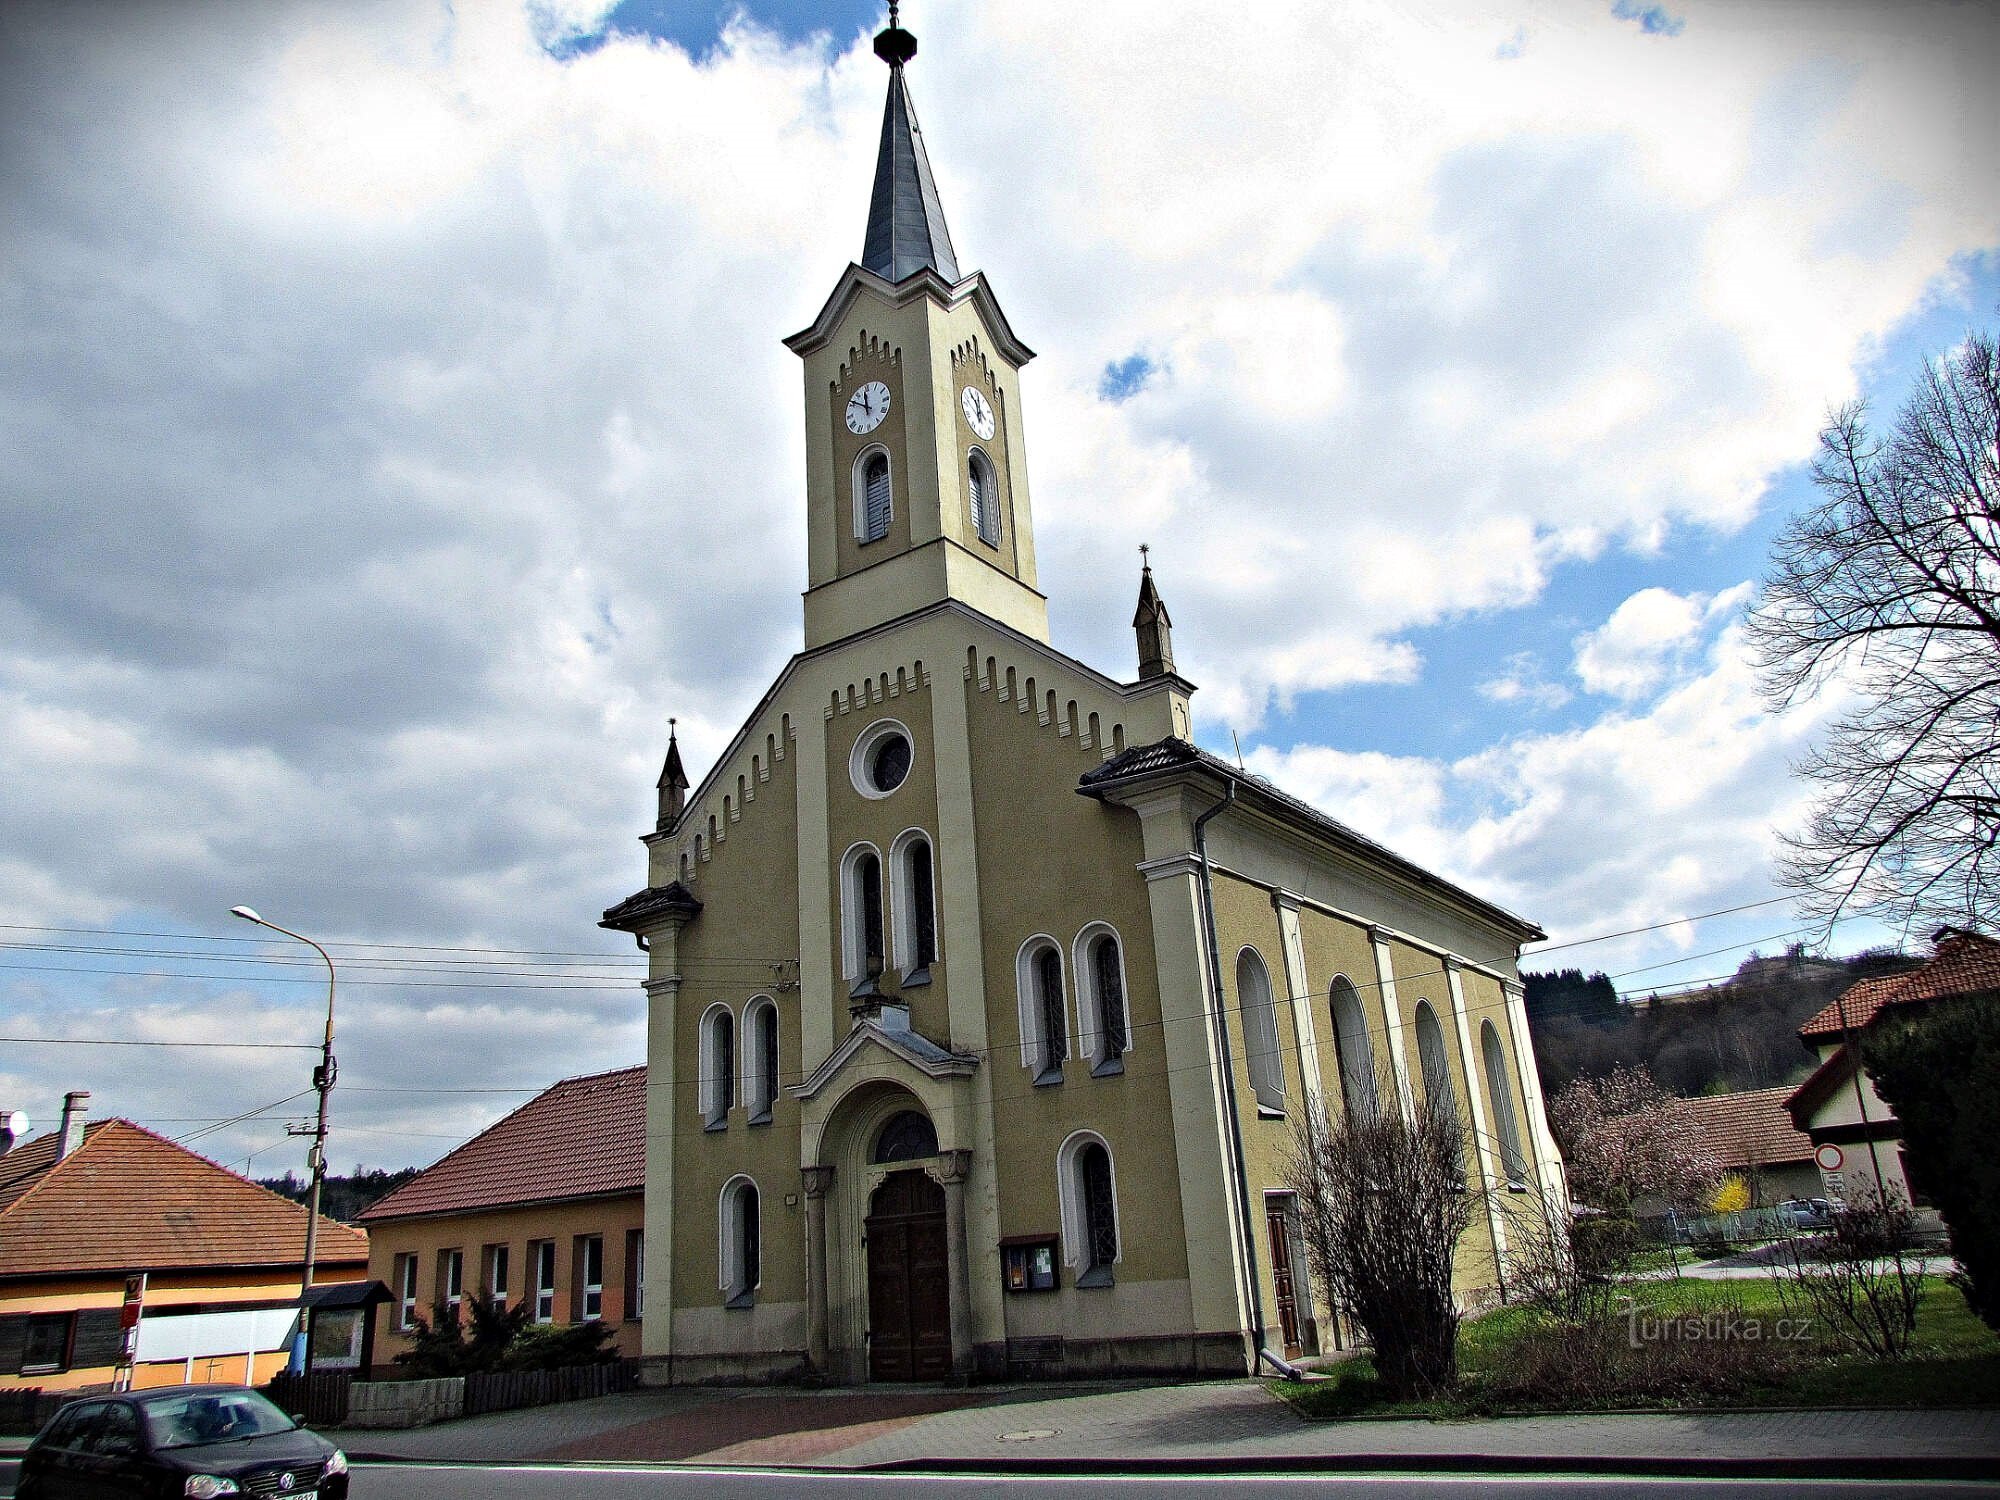 Jablůnka - nhà thờ Tin lành